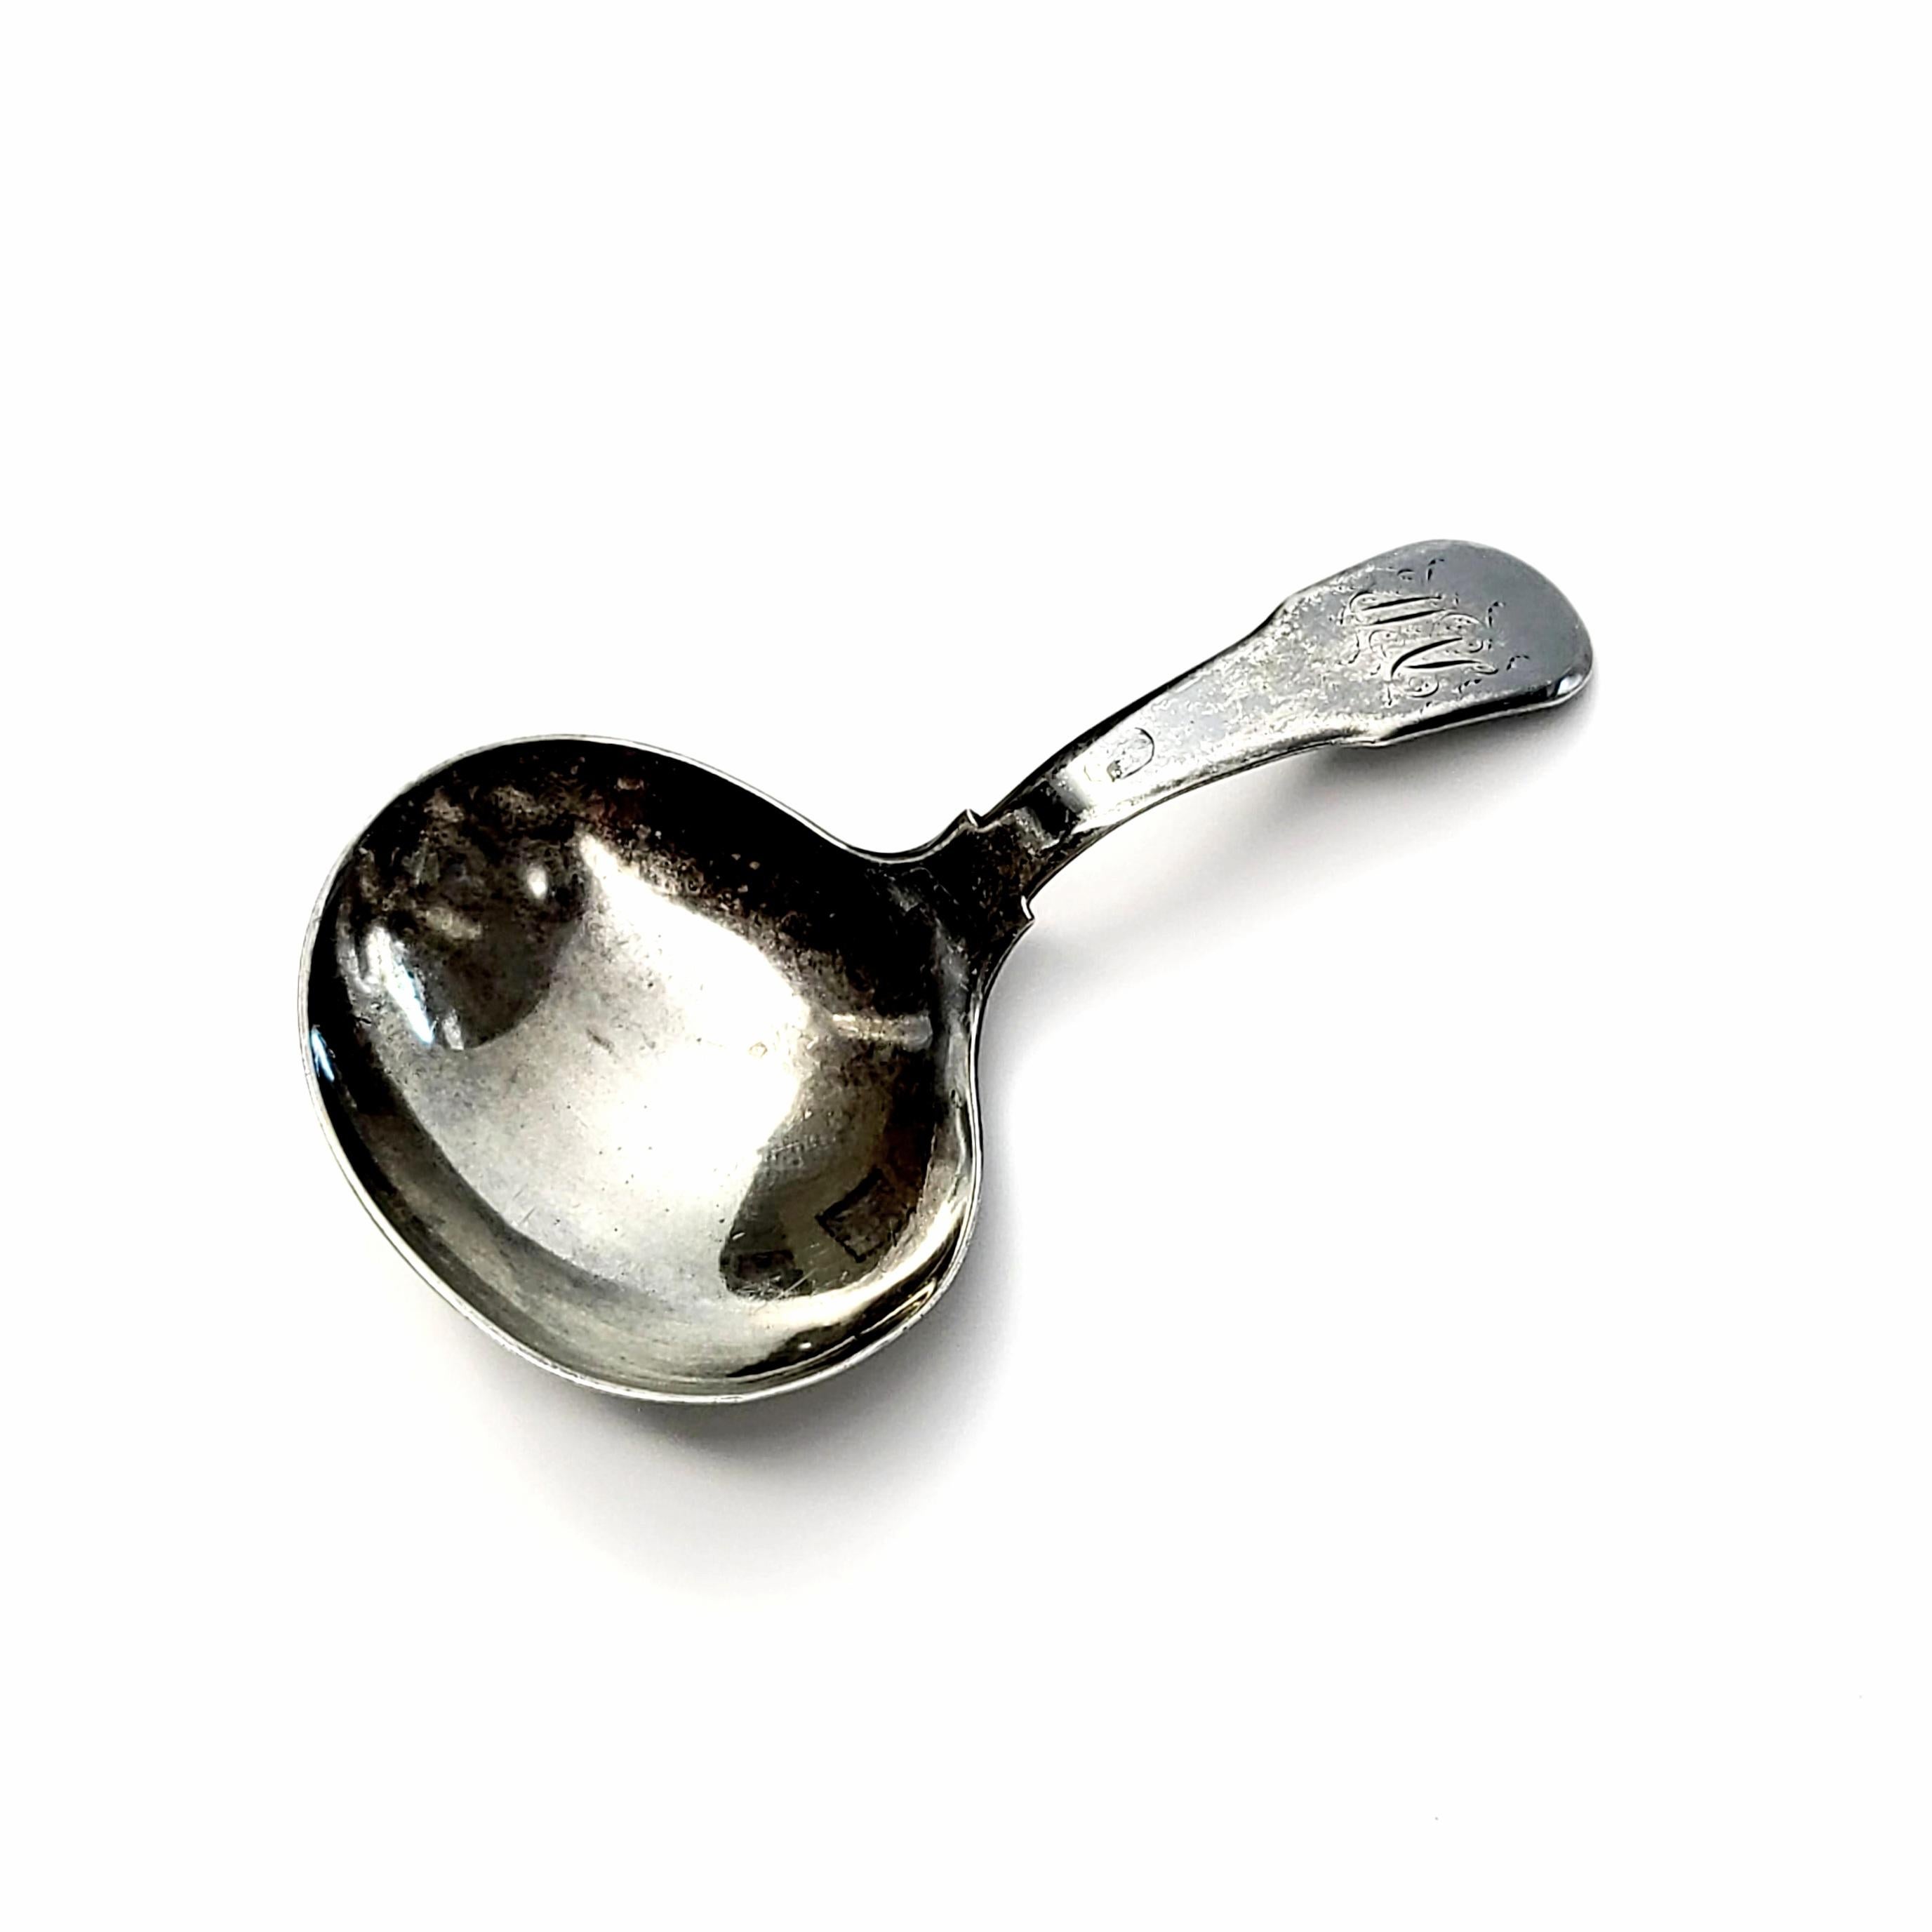 morley spoons